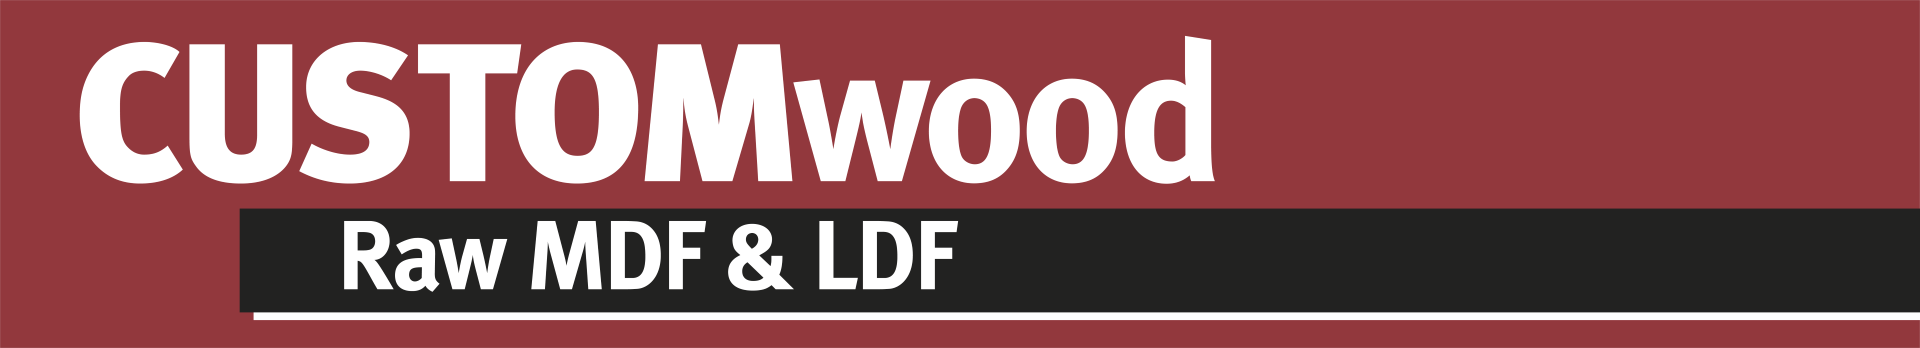 CUSTOMwood Raw MDF & LDF